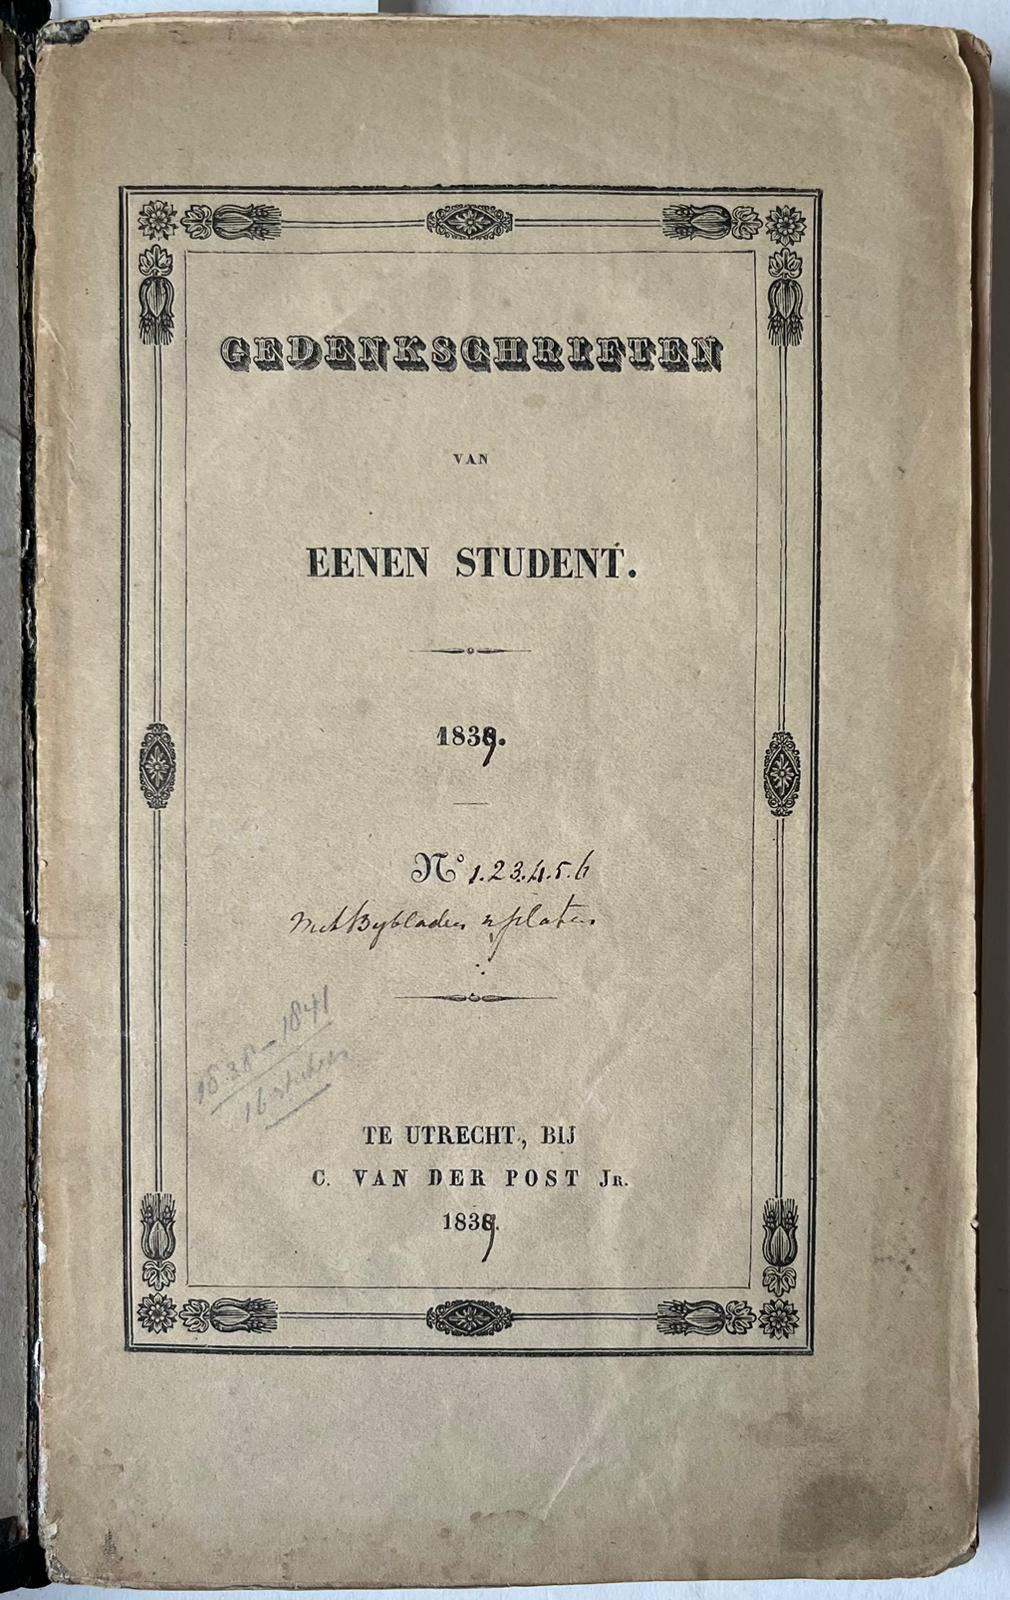 [Literature 1839] Gedenkschriften van eenen student. No. 1- 6. Utrecht, C. van der Post Jr. 1839, 22 pp.